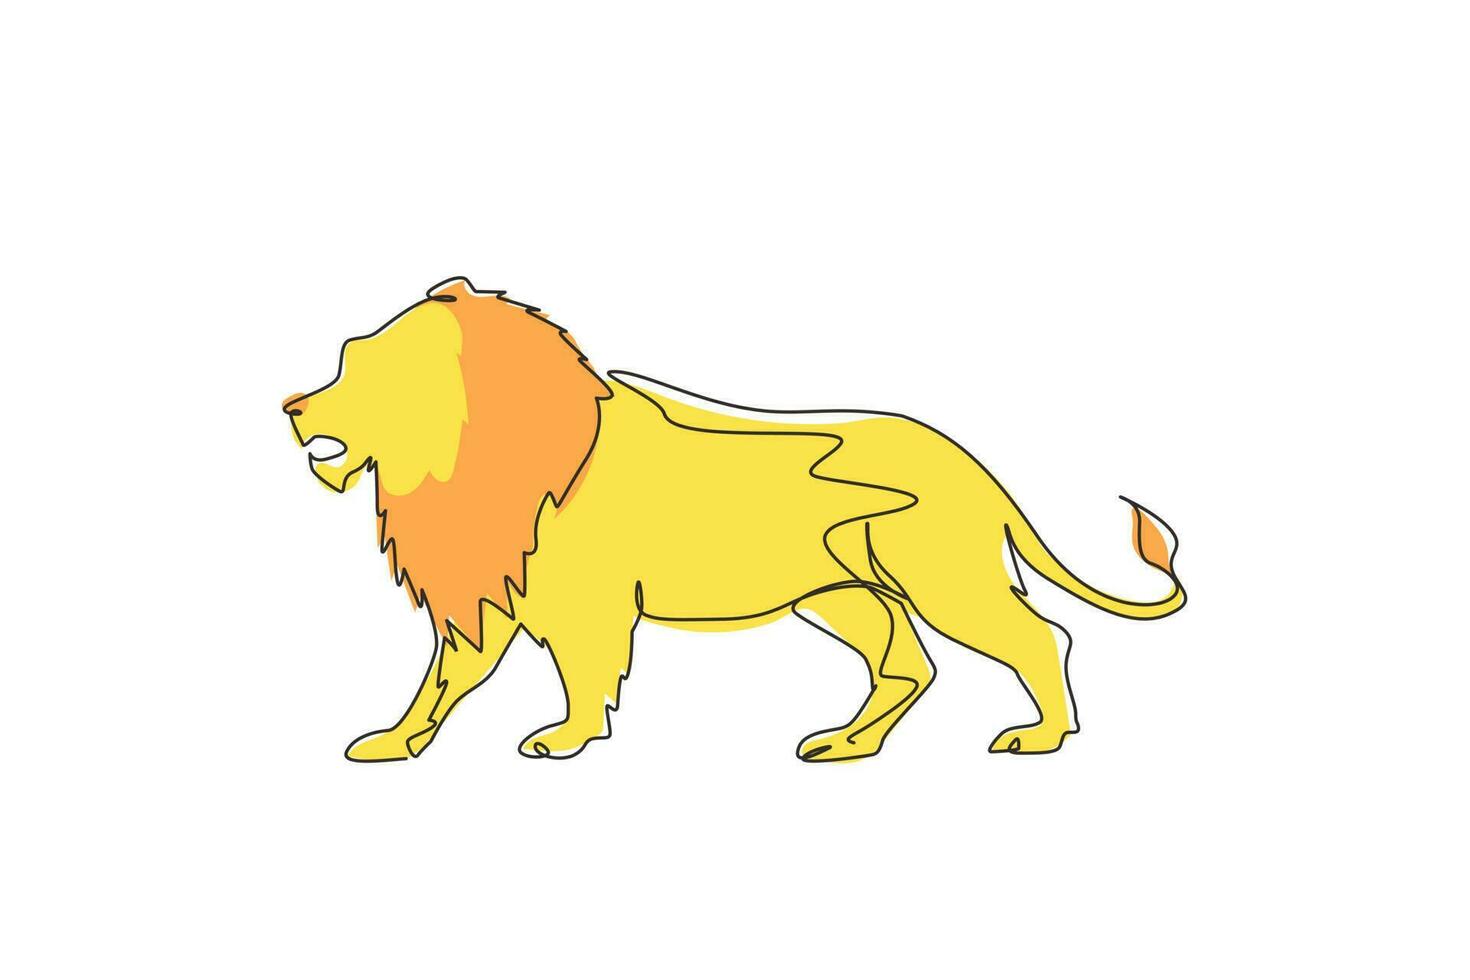 dibujo de una sola línea continua león fuerte de pie de cuerpo completo, rey de la jungla. mascota de mamífero felino fuerte. peligroso logotipo de animal de gato grande. Ilustración de vector de diseño gráfico de dibujo de una línea dinámica